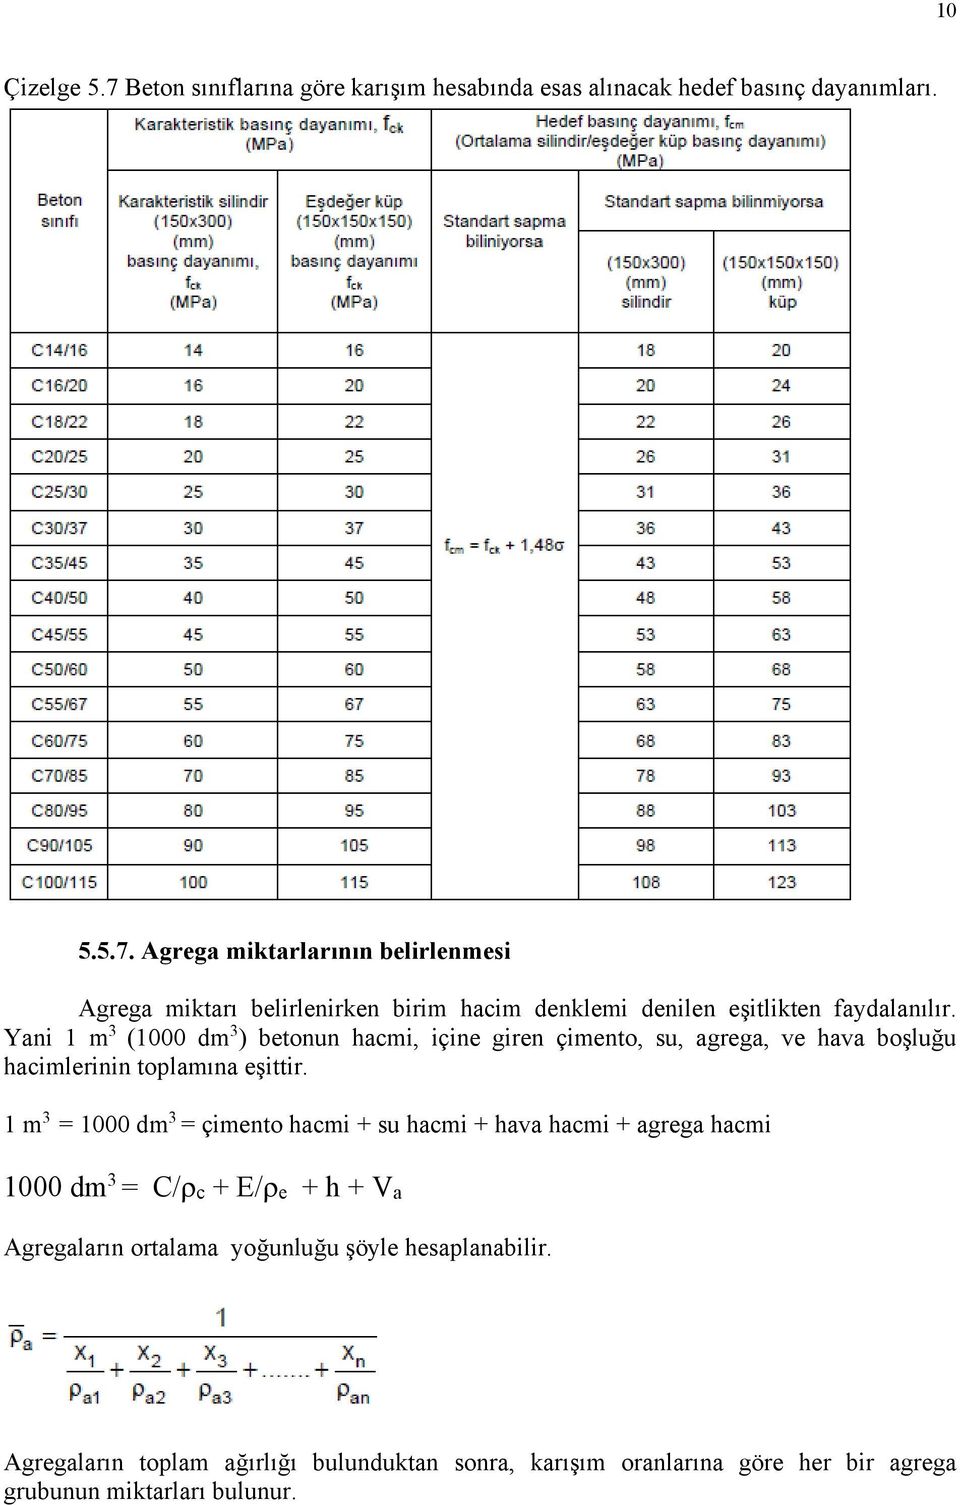 1 m 3 = 1000 dm 3 = çimento hacmi + su hacmi + hava hacmi + agrega hacmi 1000 dm 3 = C/ c + E/ e + h + Va Agregaların ortalama yoğunluğu şöyle